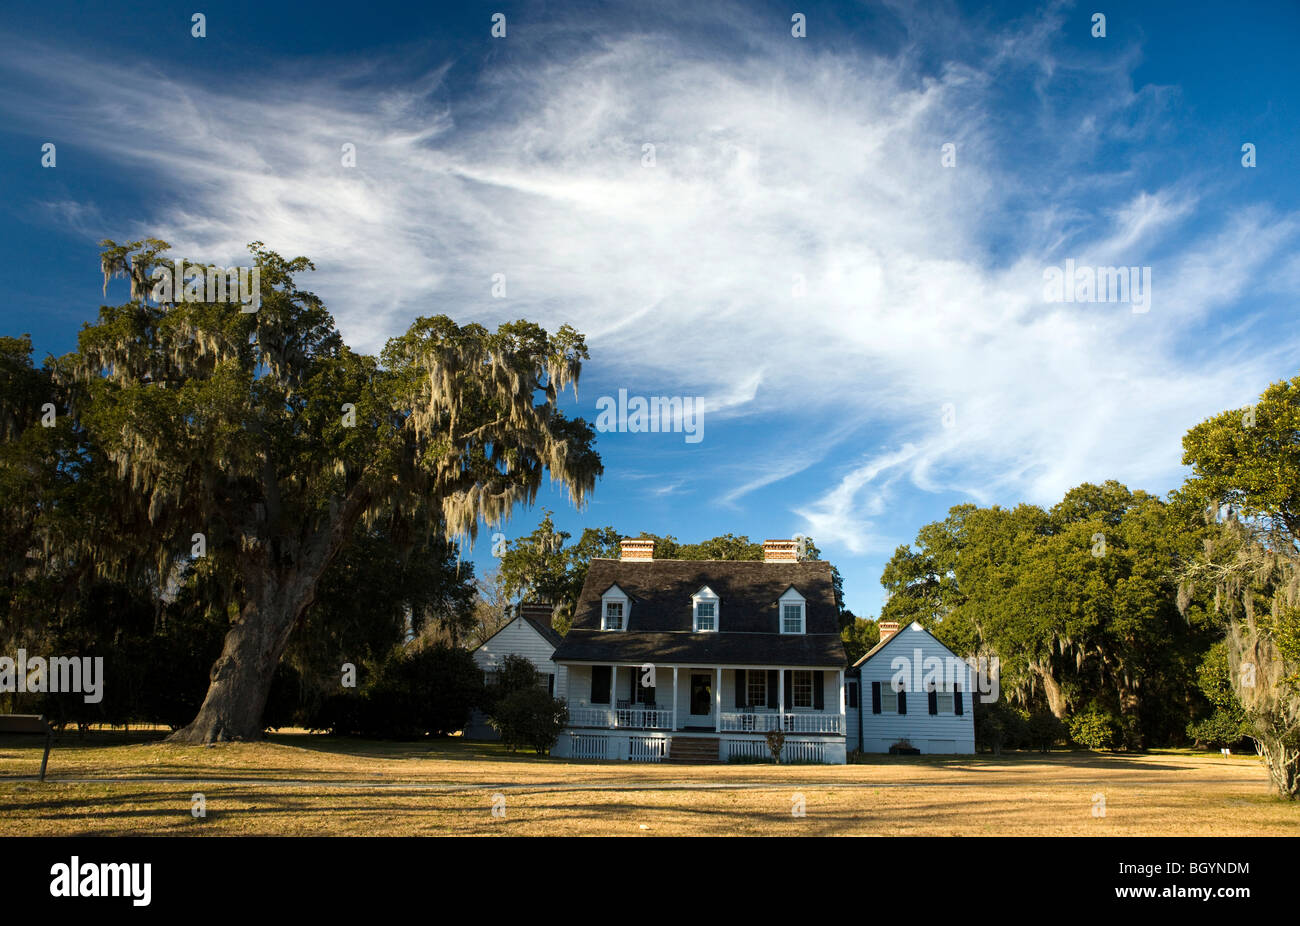 Haus auf dem Gelände der Charles Pinckney National Historic Site, in der Nähe von Charleston, South Carolina, Vereinigte Staaten von Amerika. Stockfoto